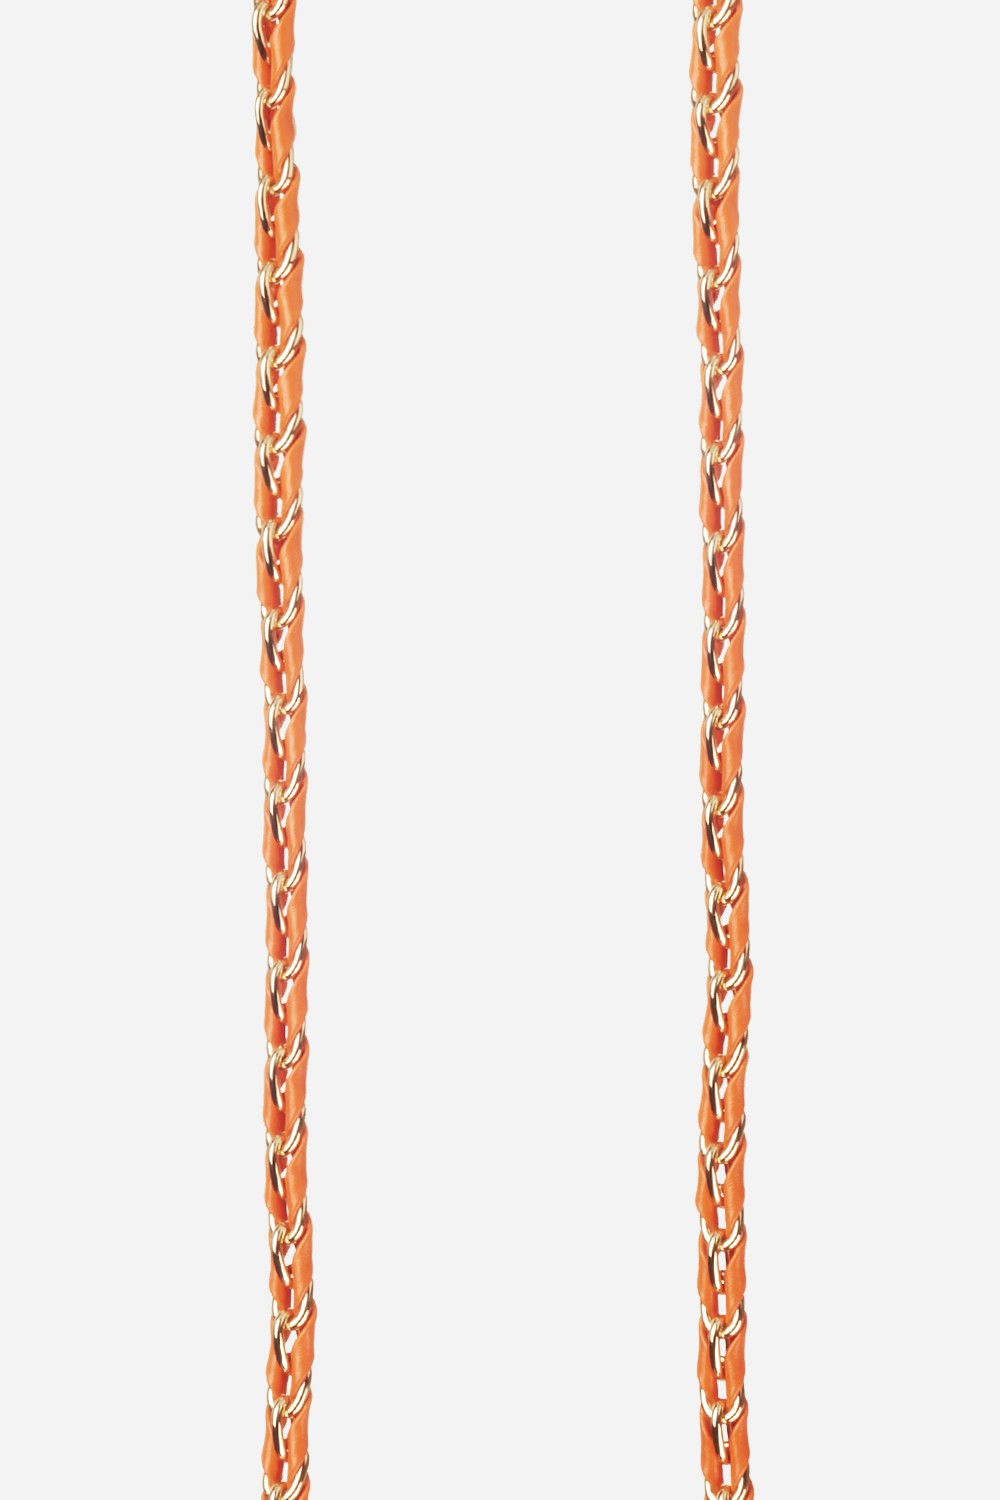 Lou Orange Long Chain 120 cm